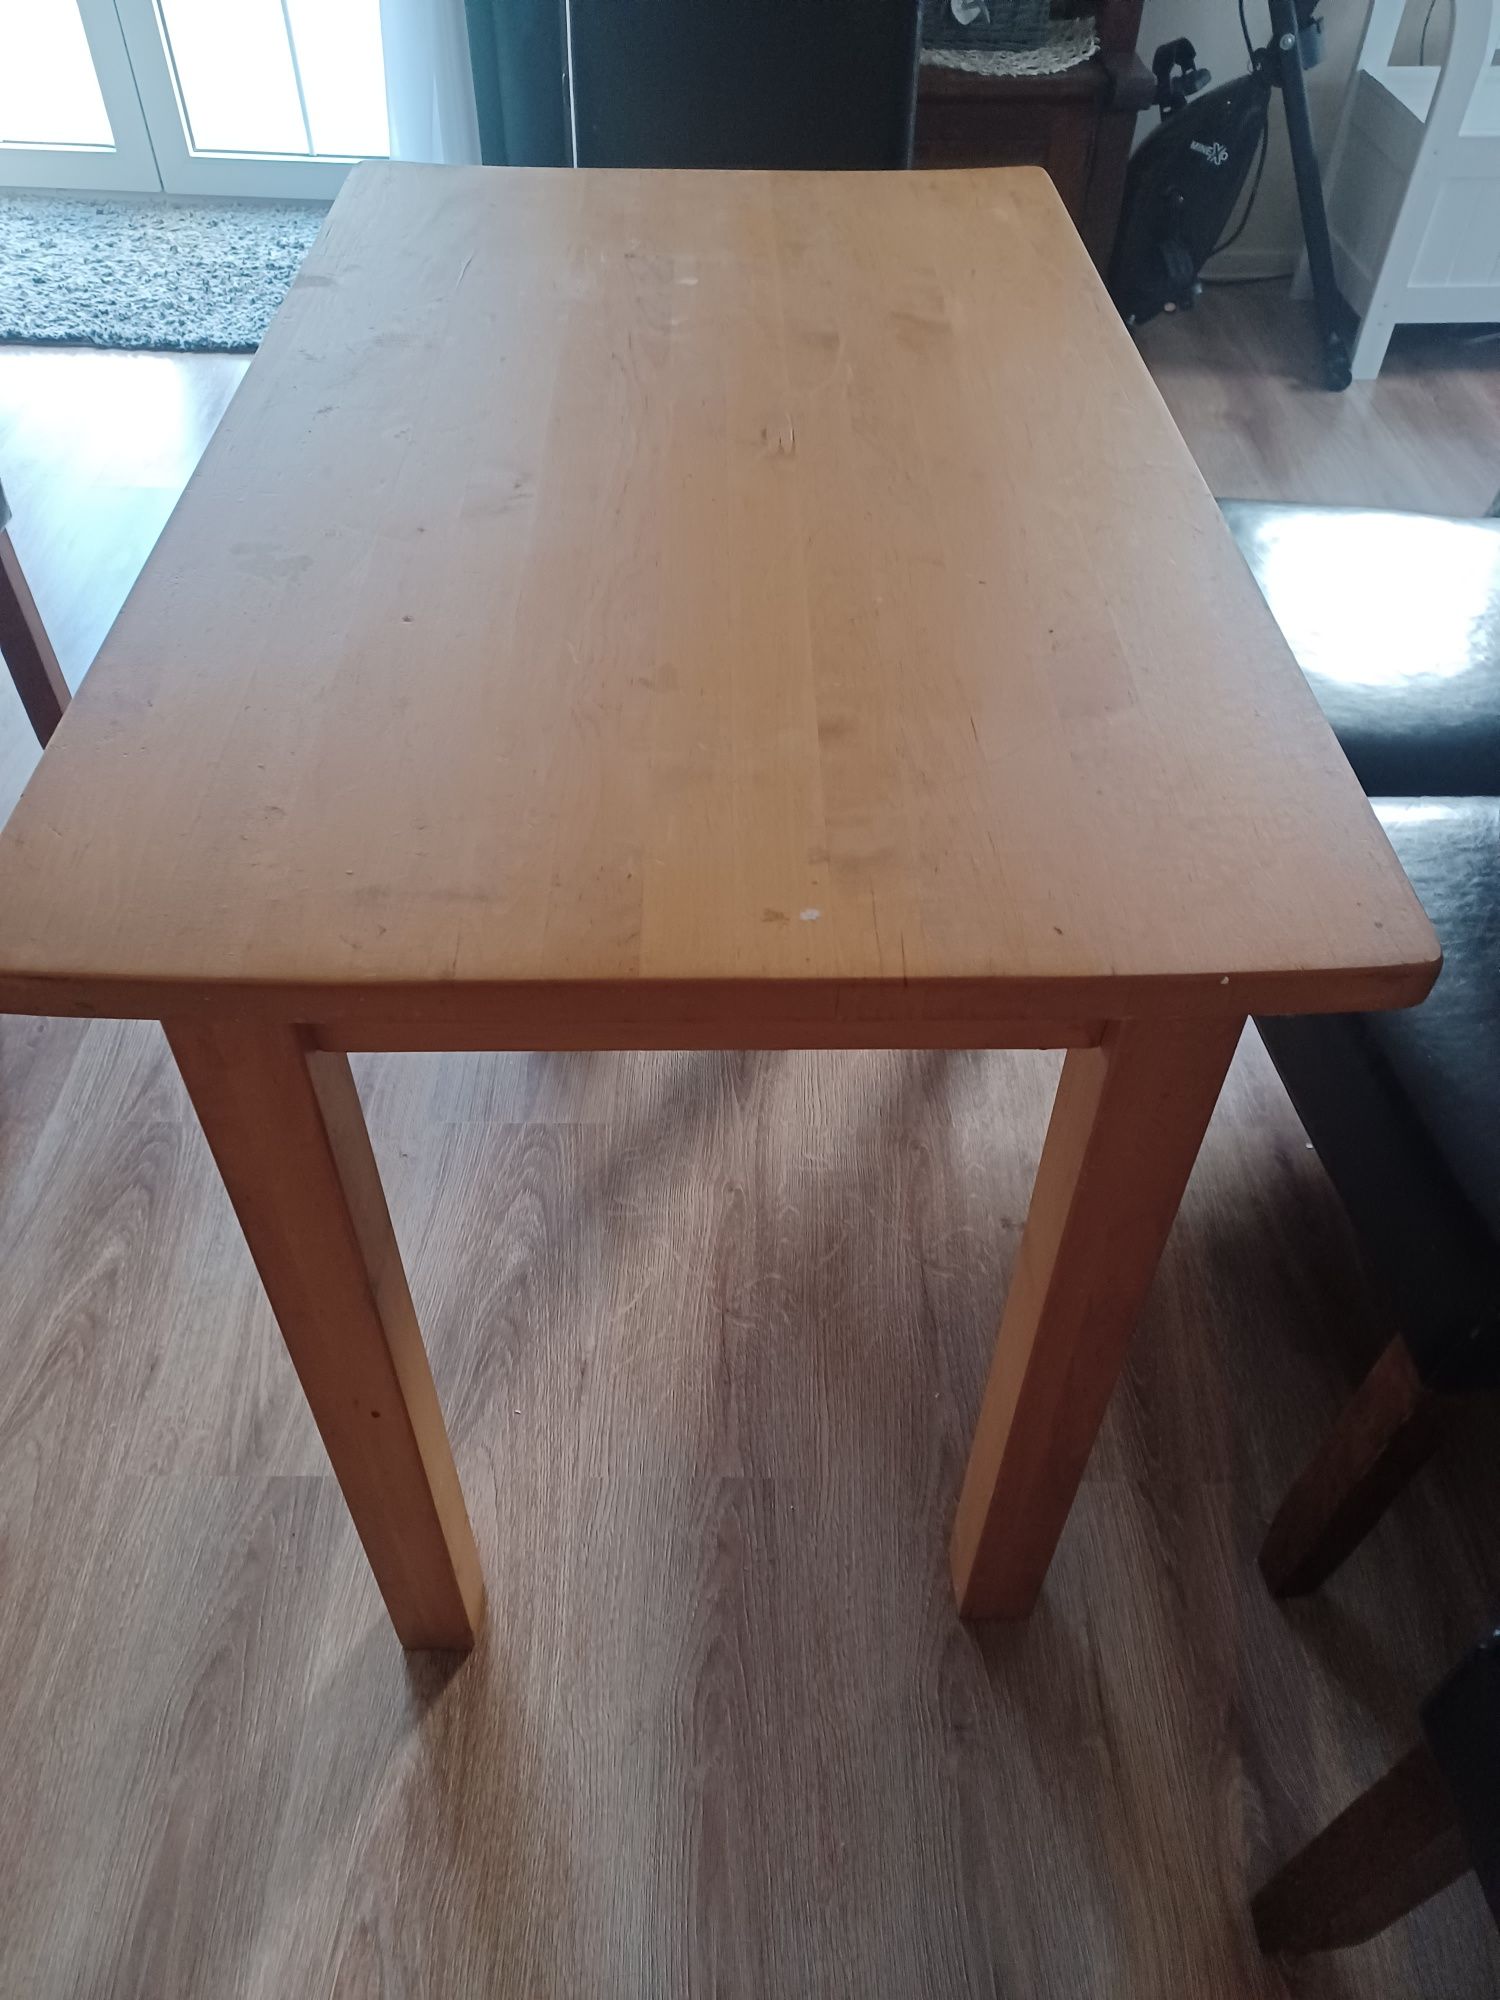 Stół drewniany 100cm x60cm.